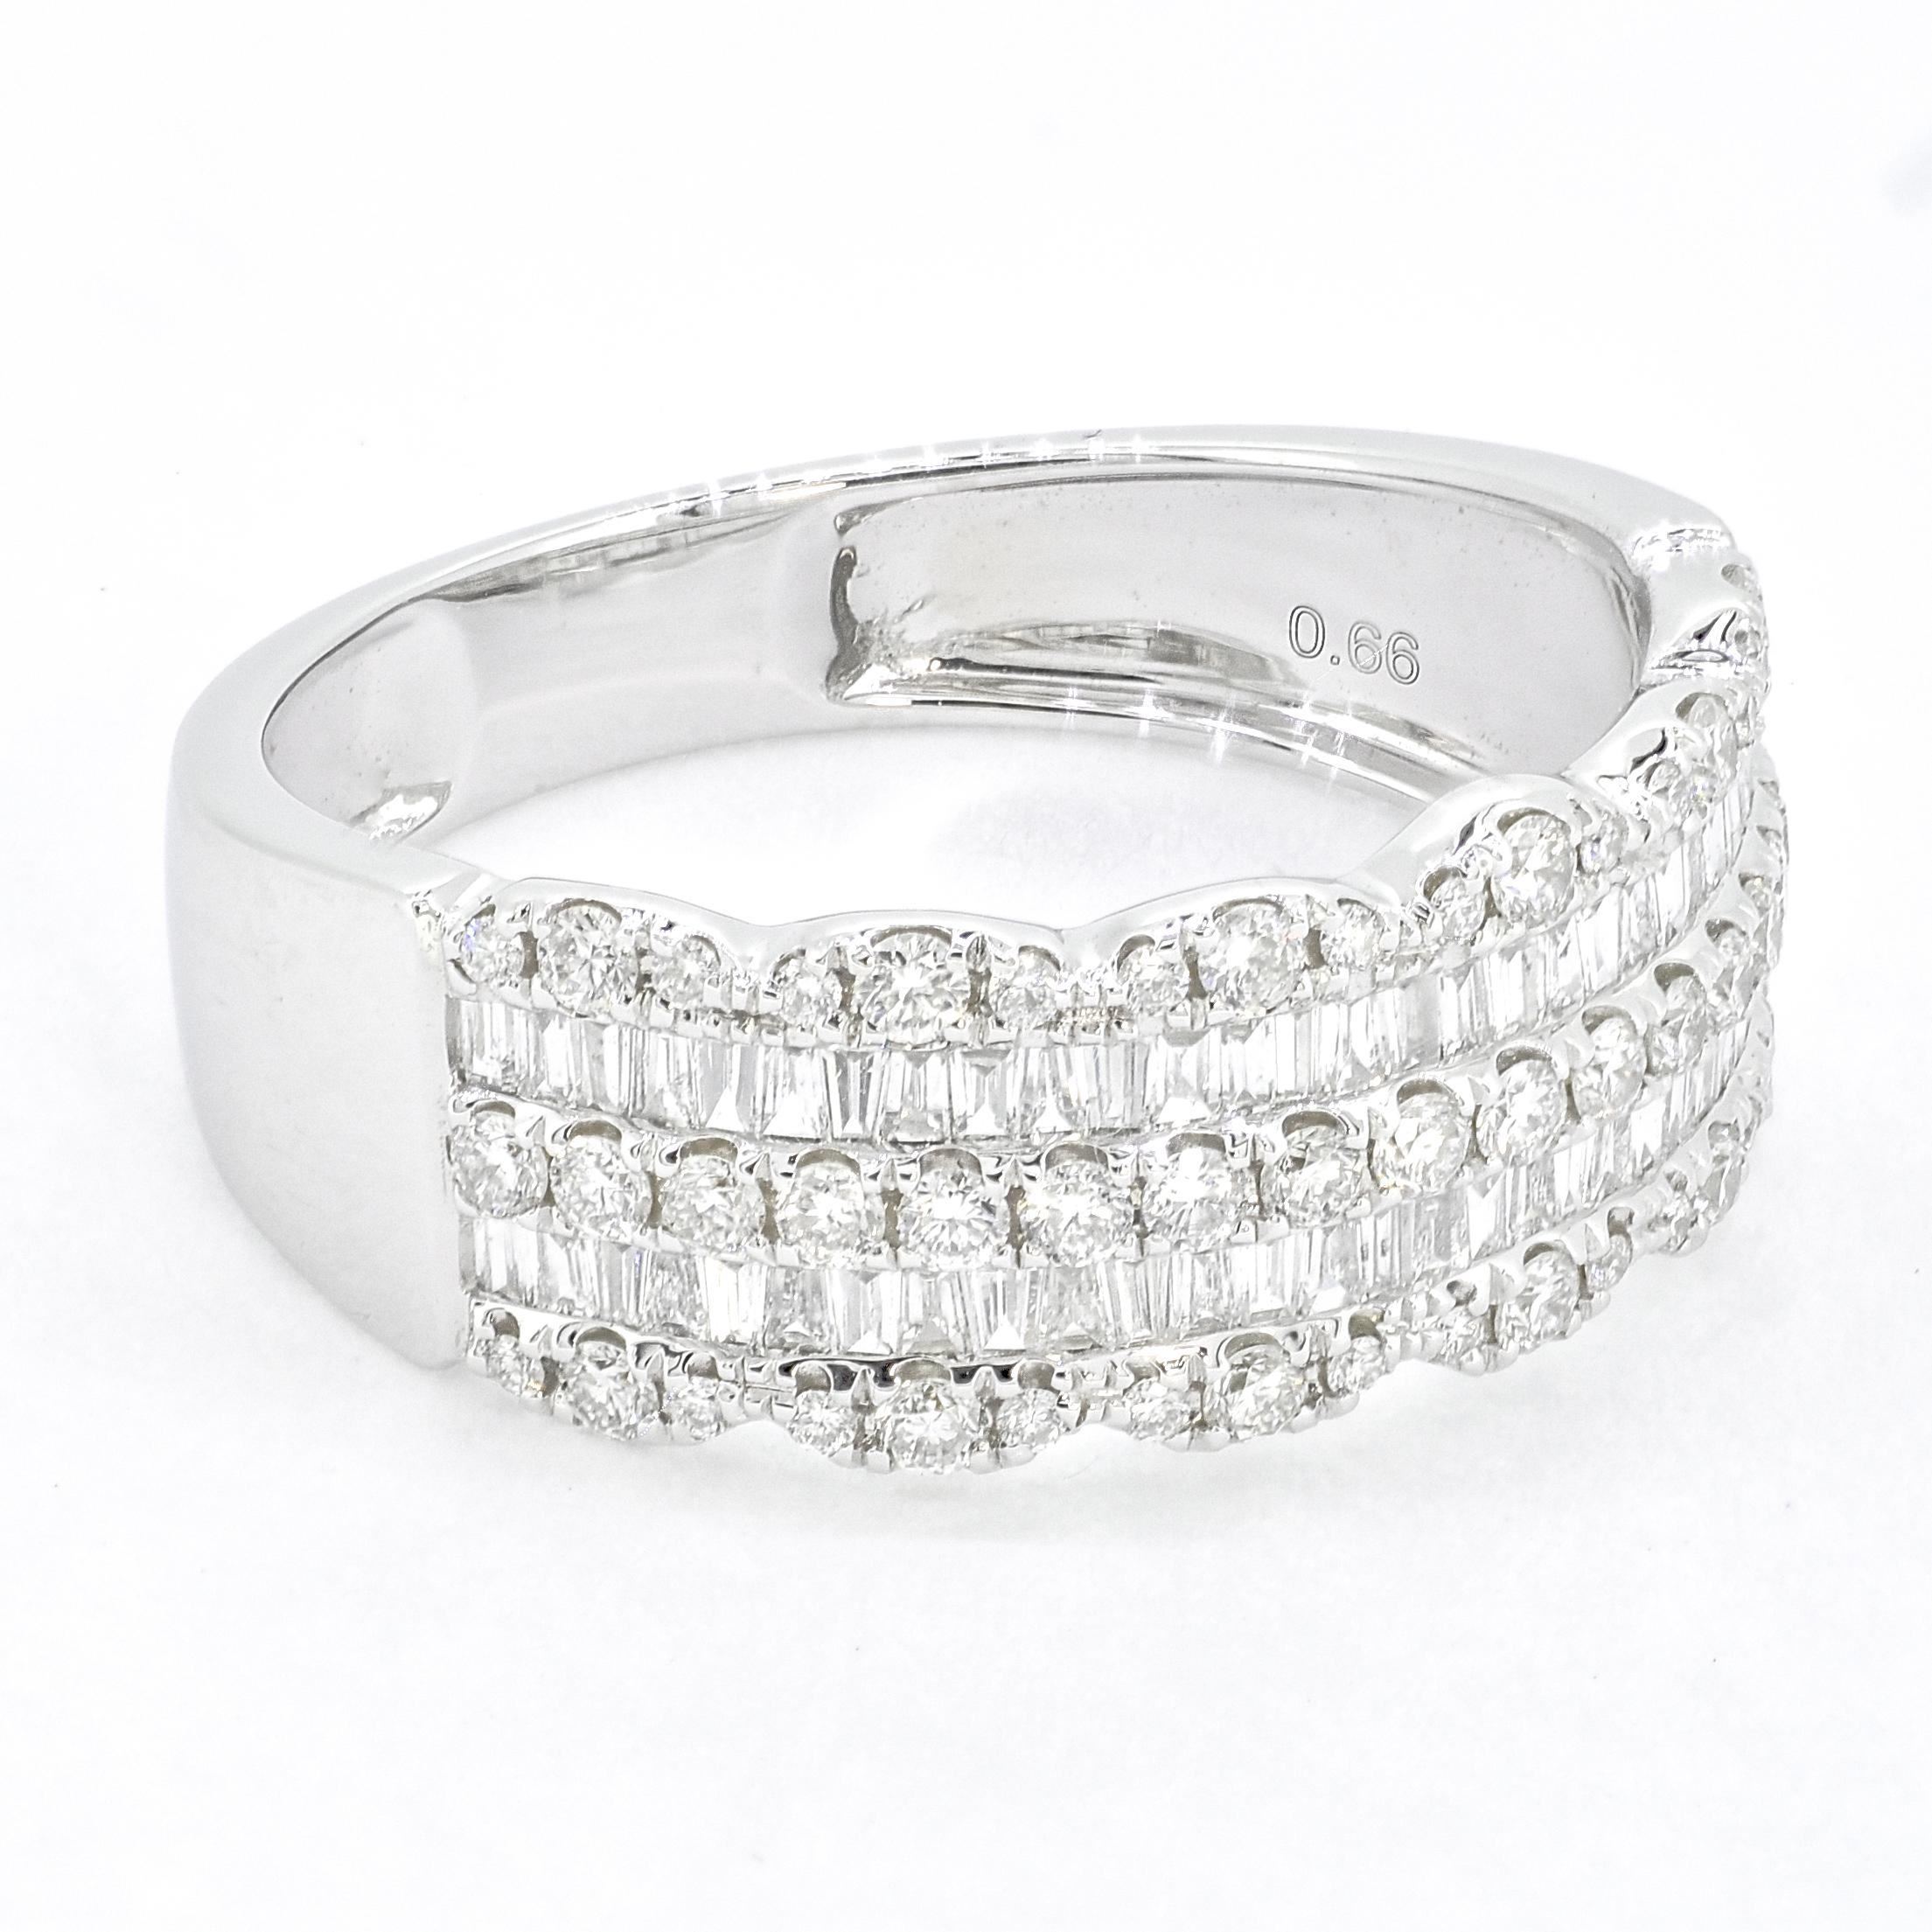 Si vous êtes à la recherche d'un beau bracelet en diamant polyvalent qui peut être porté seul ou superposé à d'autres bagues, pensez à un bracelet en or blanc 18 carats serti de diamants baguettes et ronds.

 Cette pièce exquise présente une rangée